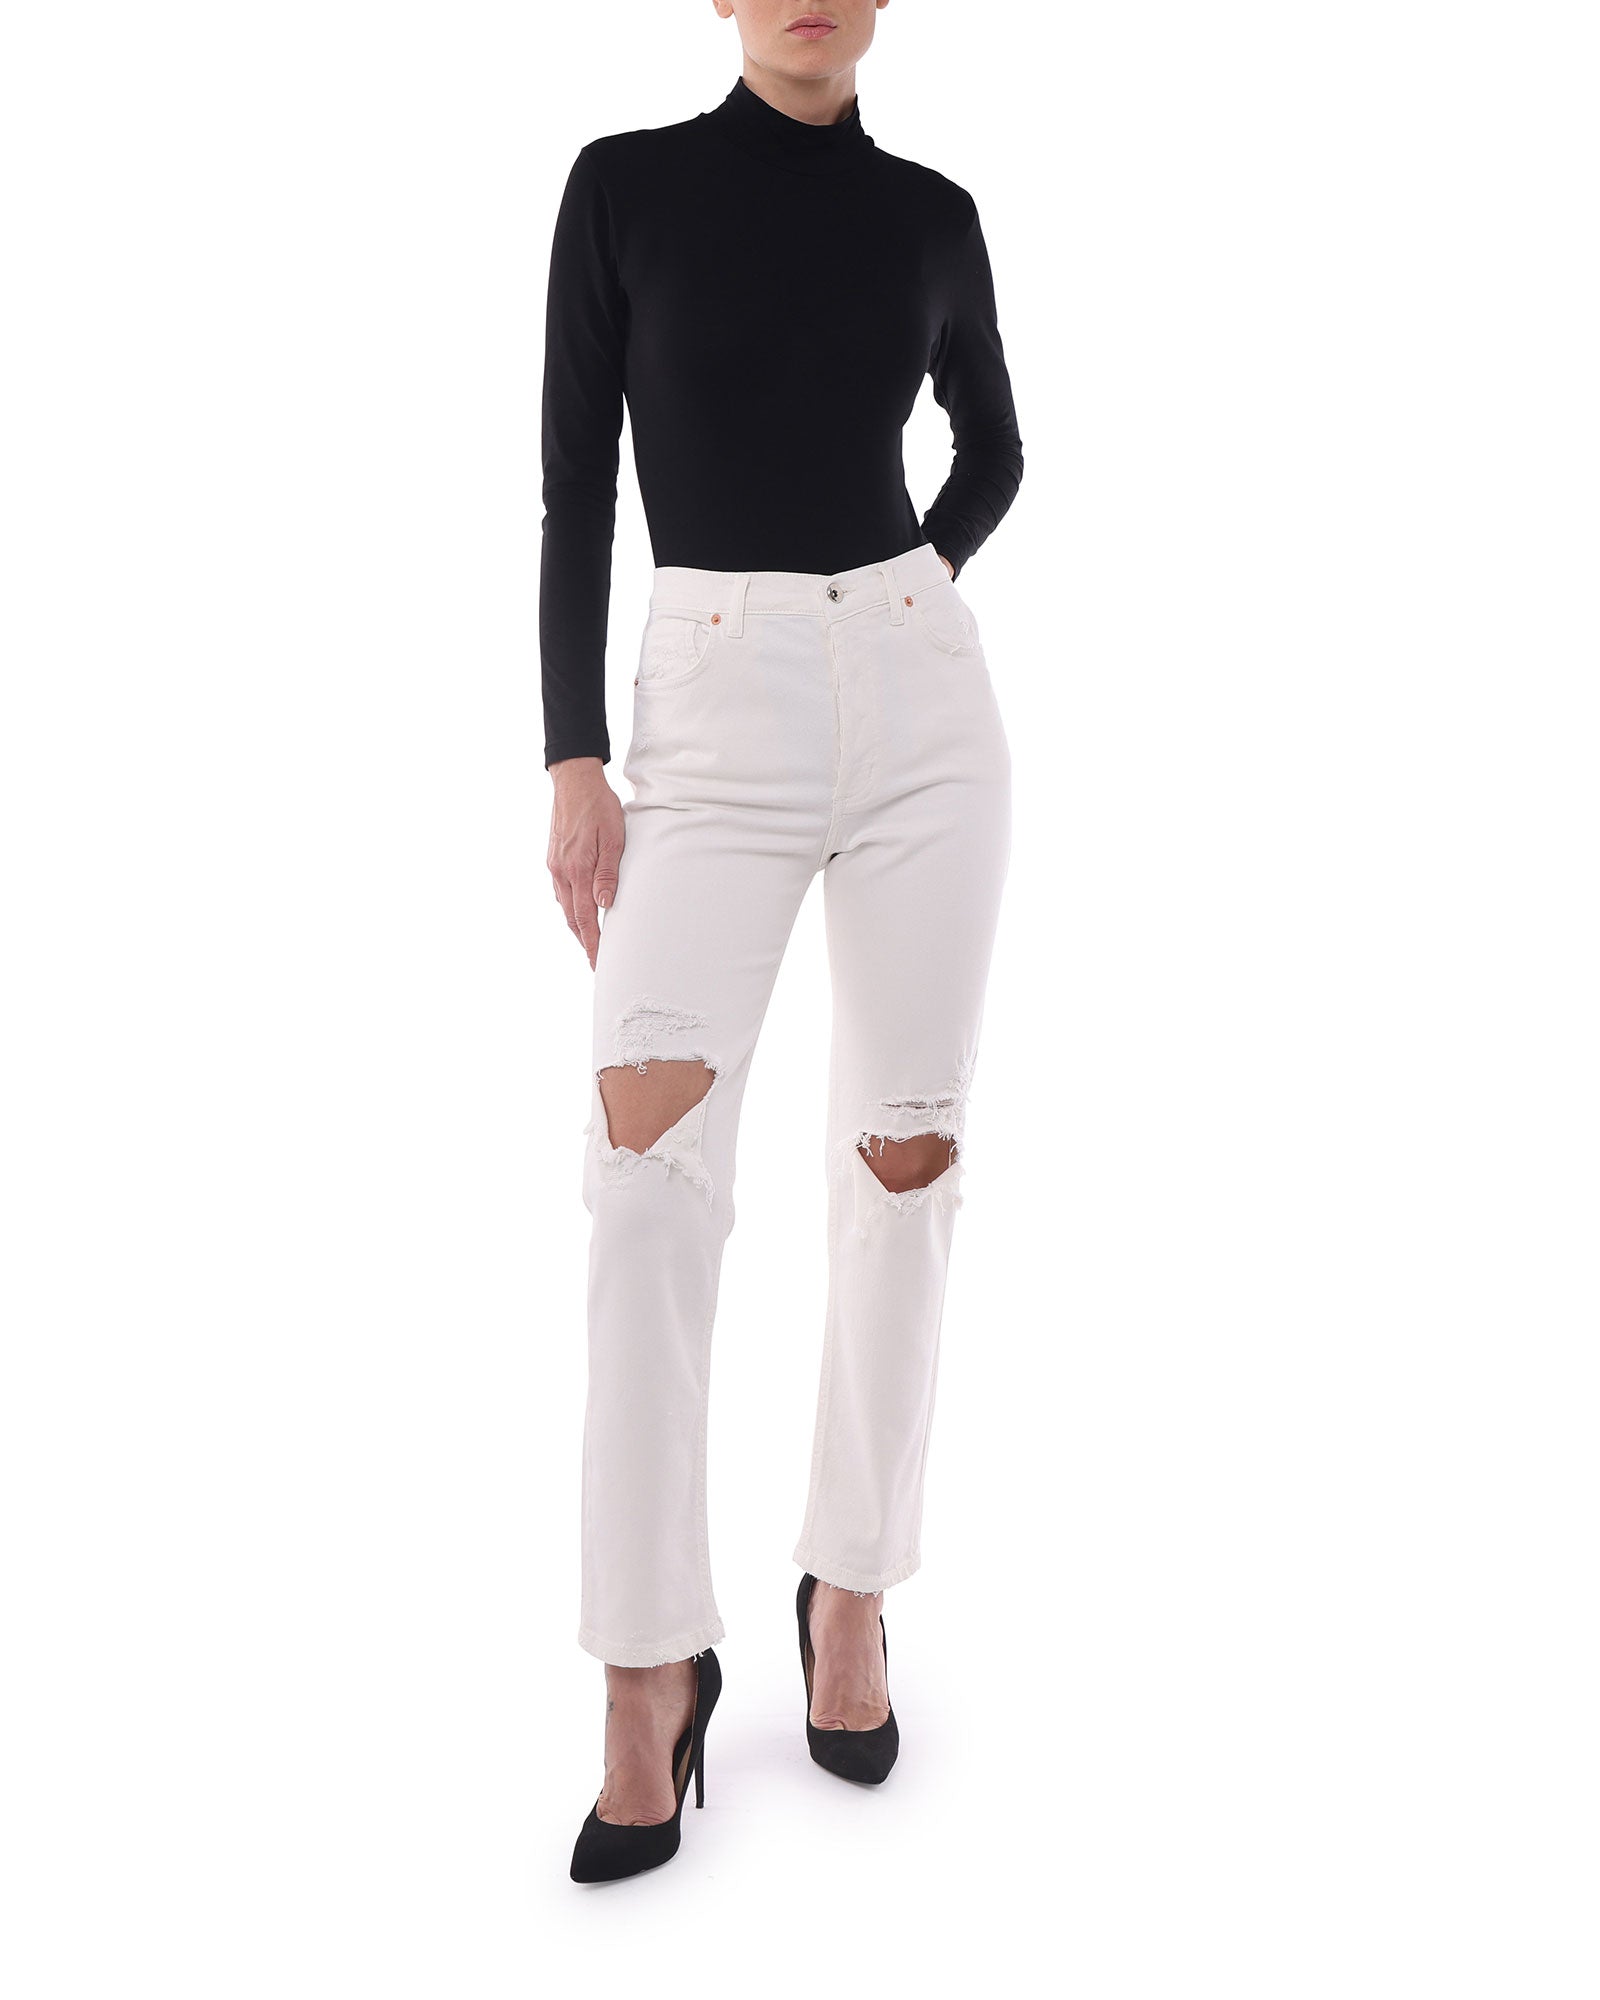 Jeans Donna in Cotone Organico (Taper - Bianco)